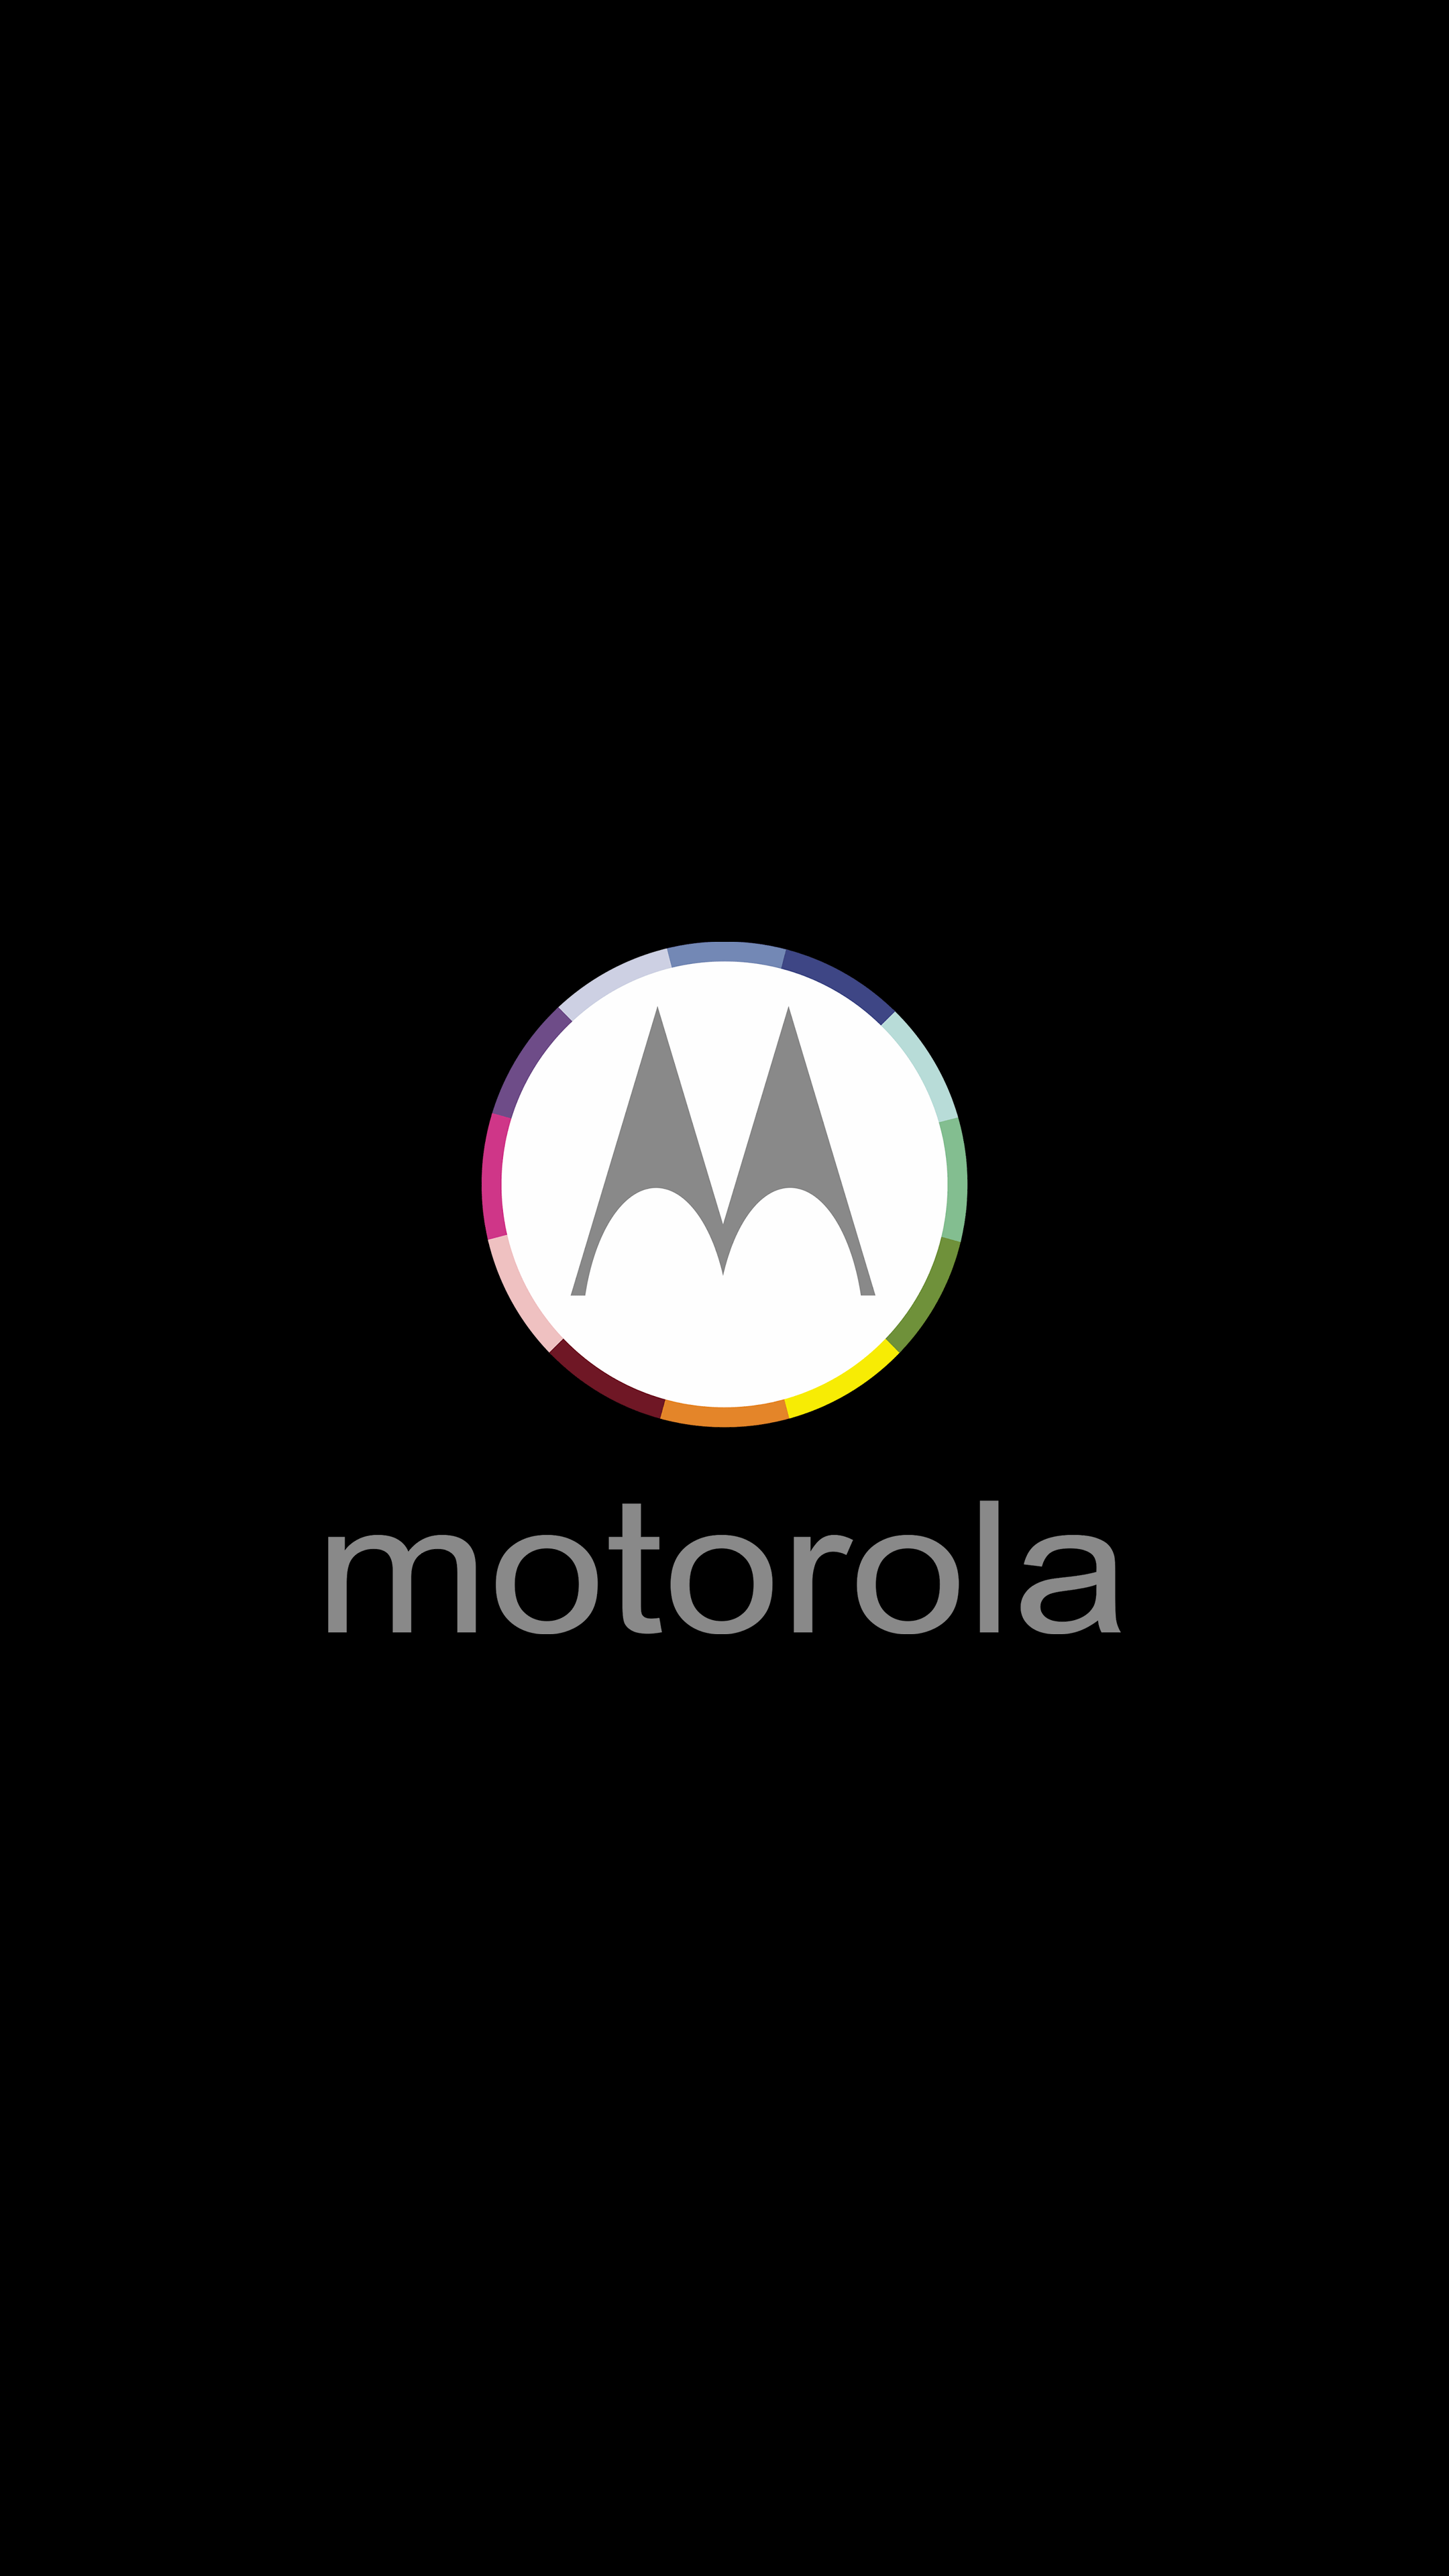 Motorola 4K AMOLED Wallpaper